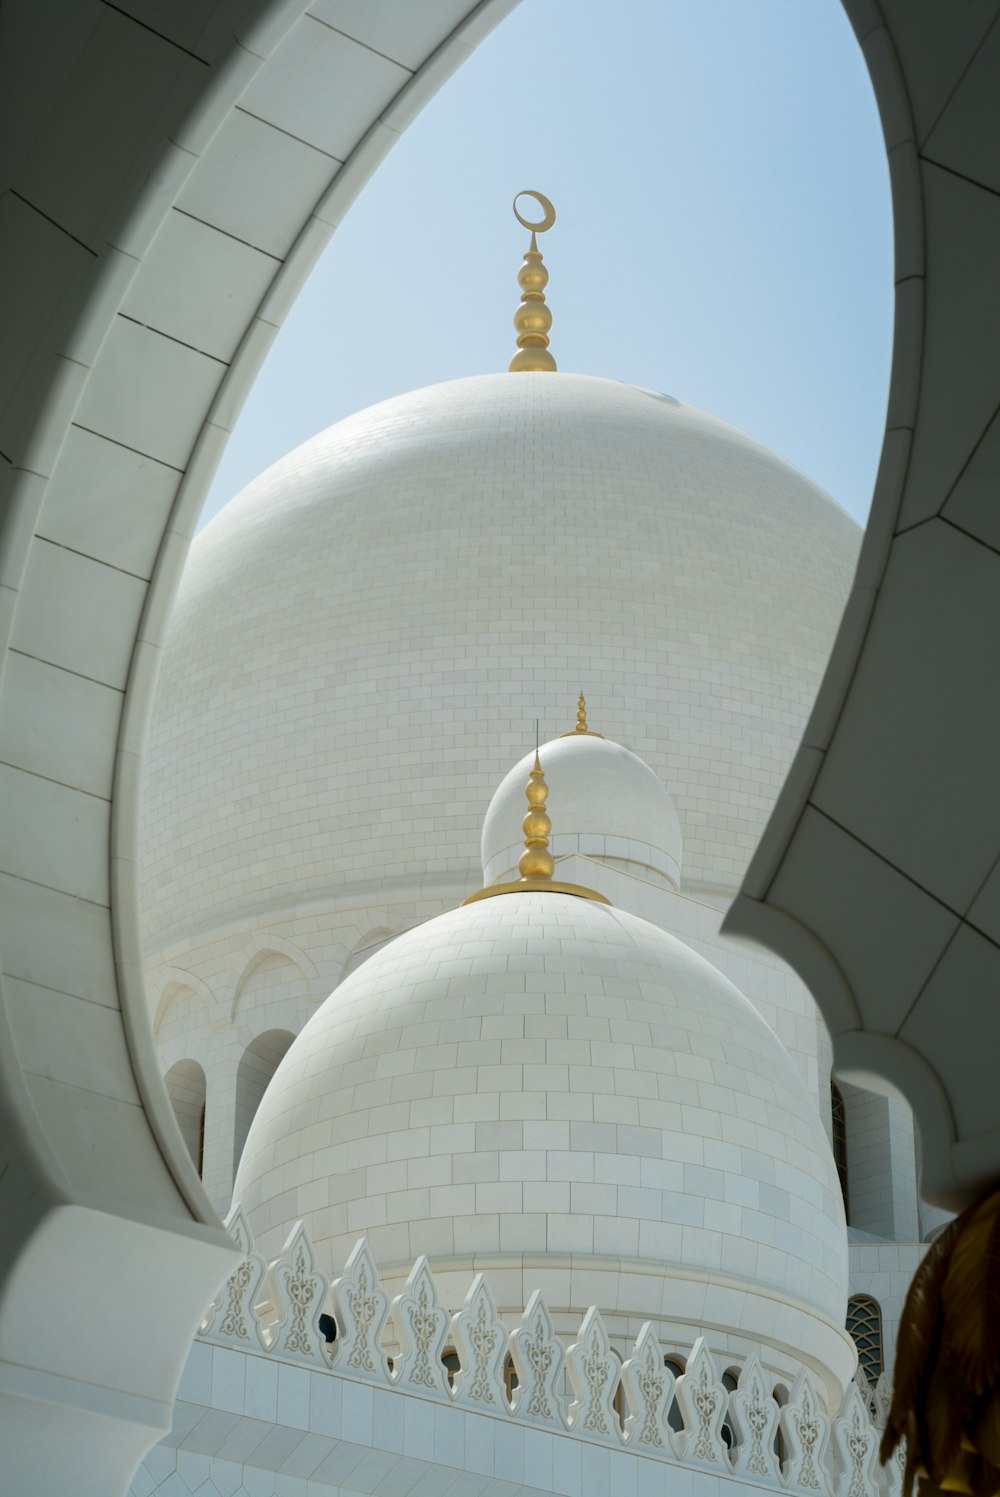 white dome mosque